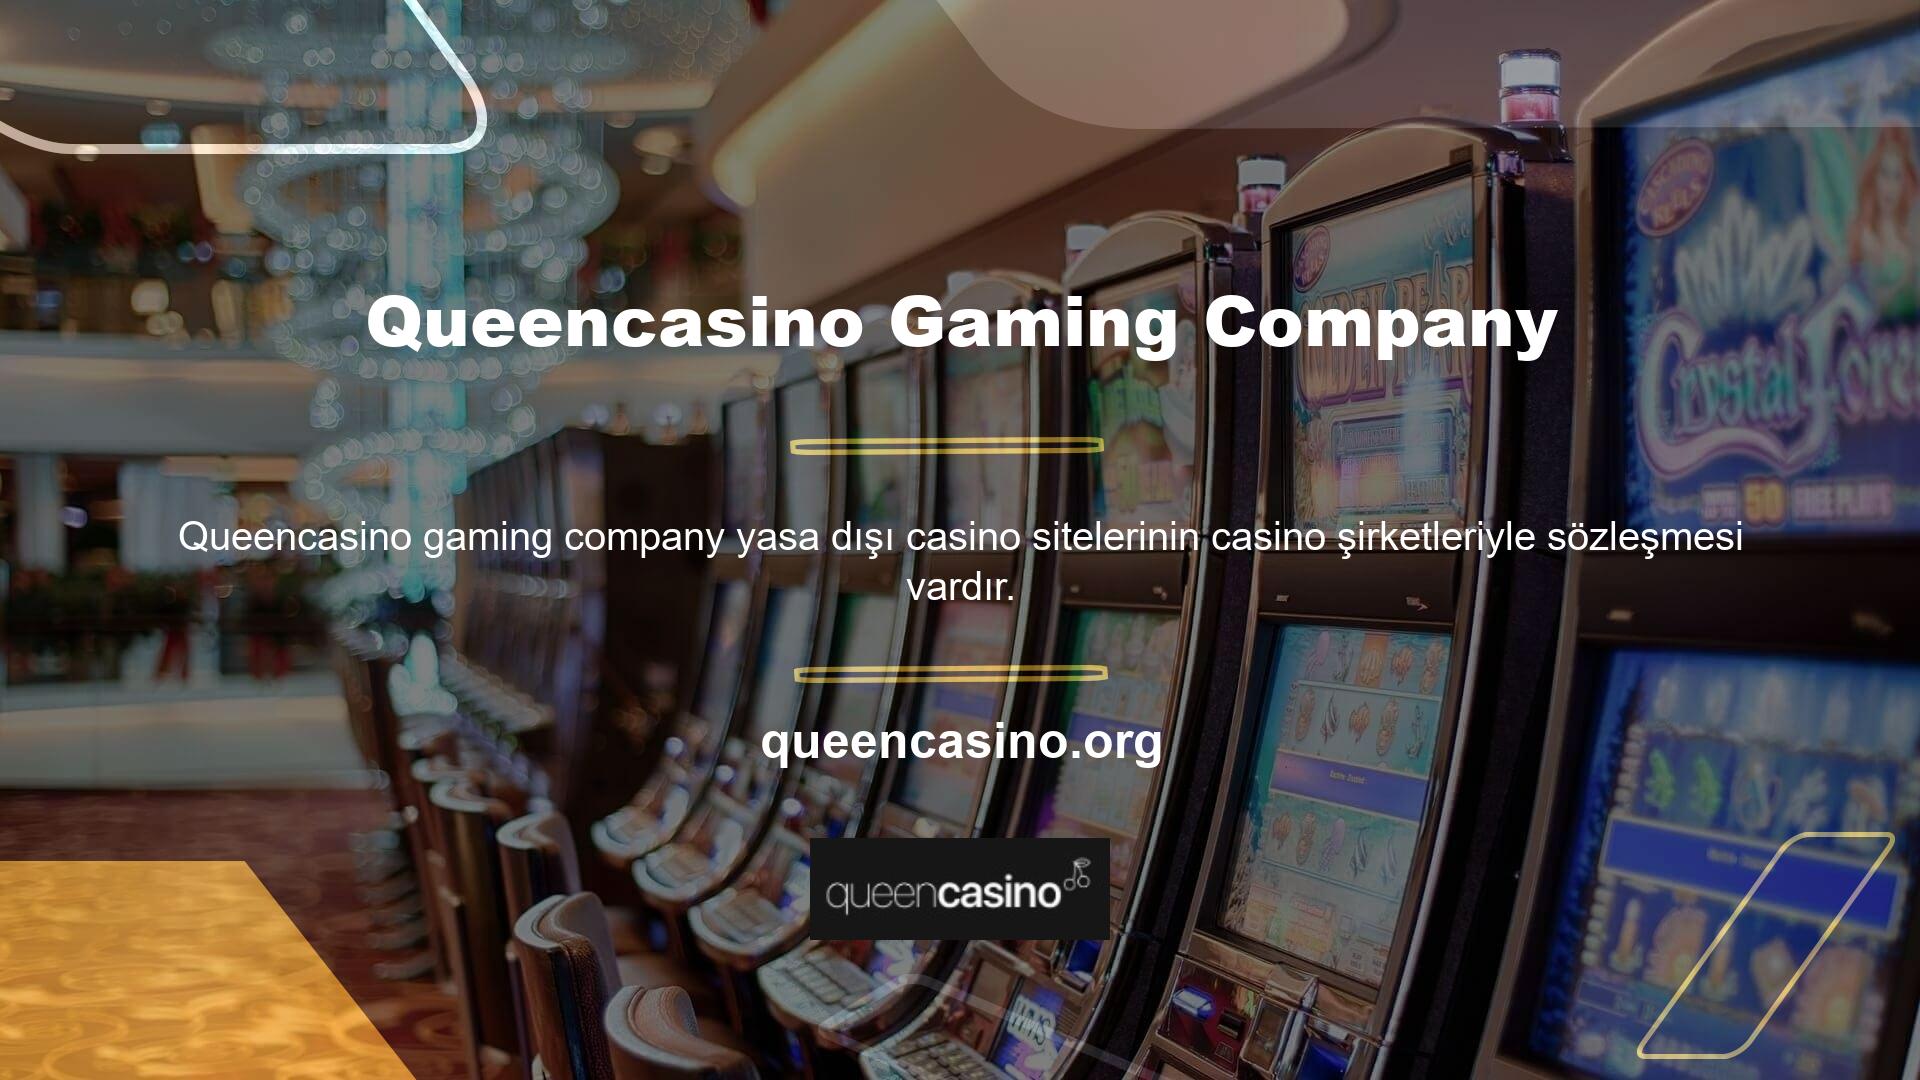 Queencasino yasa dışı casino sitelerinin adreslerini de onayladı